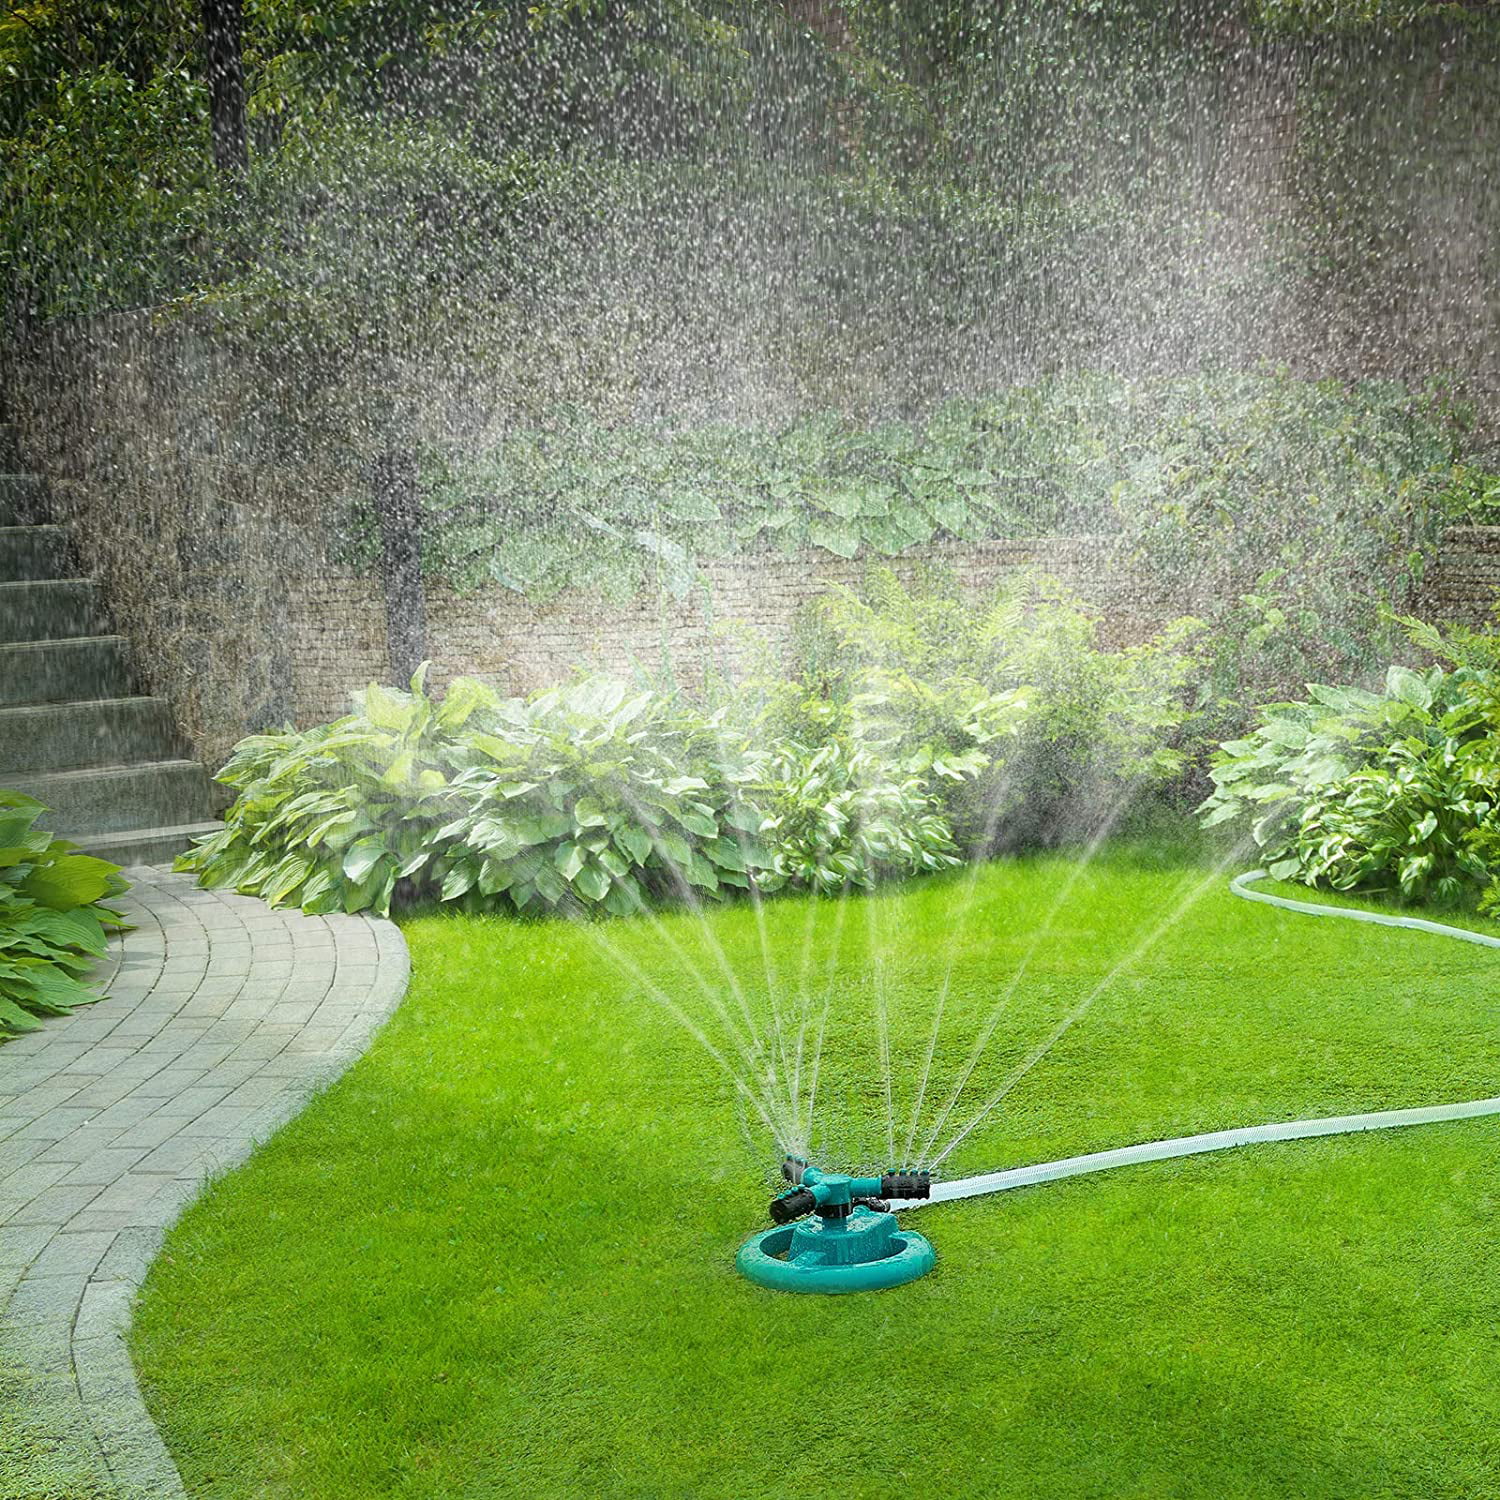 Tropfbewässerung Rasen Garten Bewässerung Dripper Sprinkler 360 Grad 8 Löcher für Gemüsegarten Kräutergarten Einstellbar 50Pcs